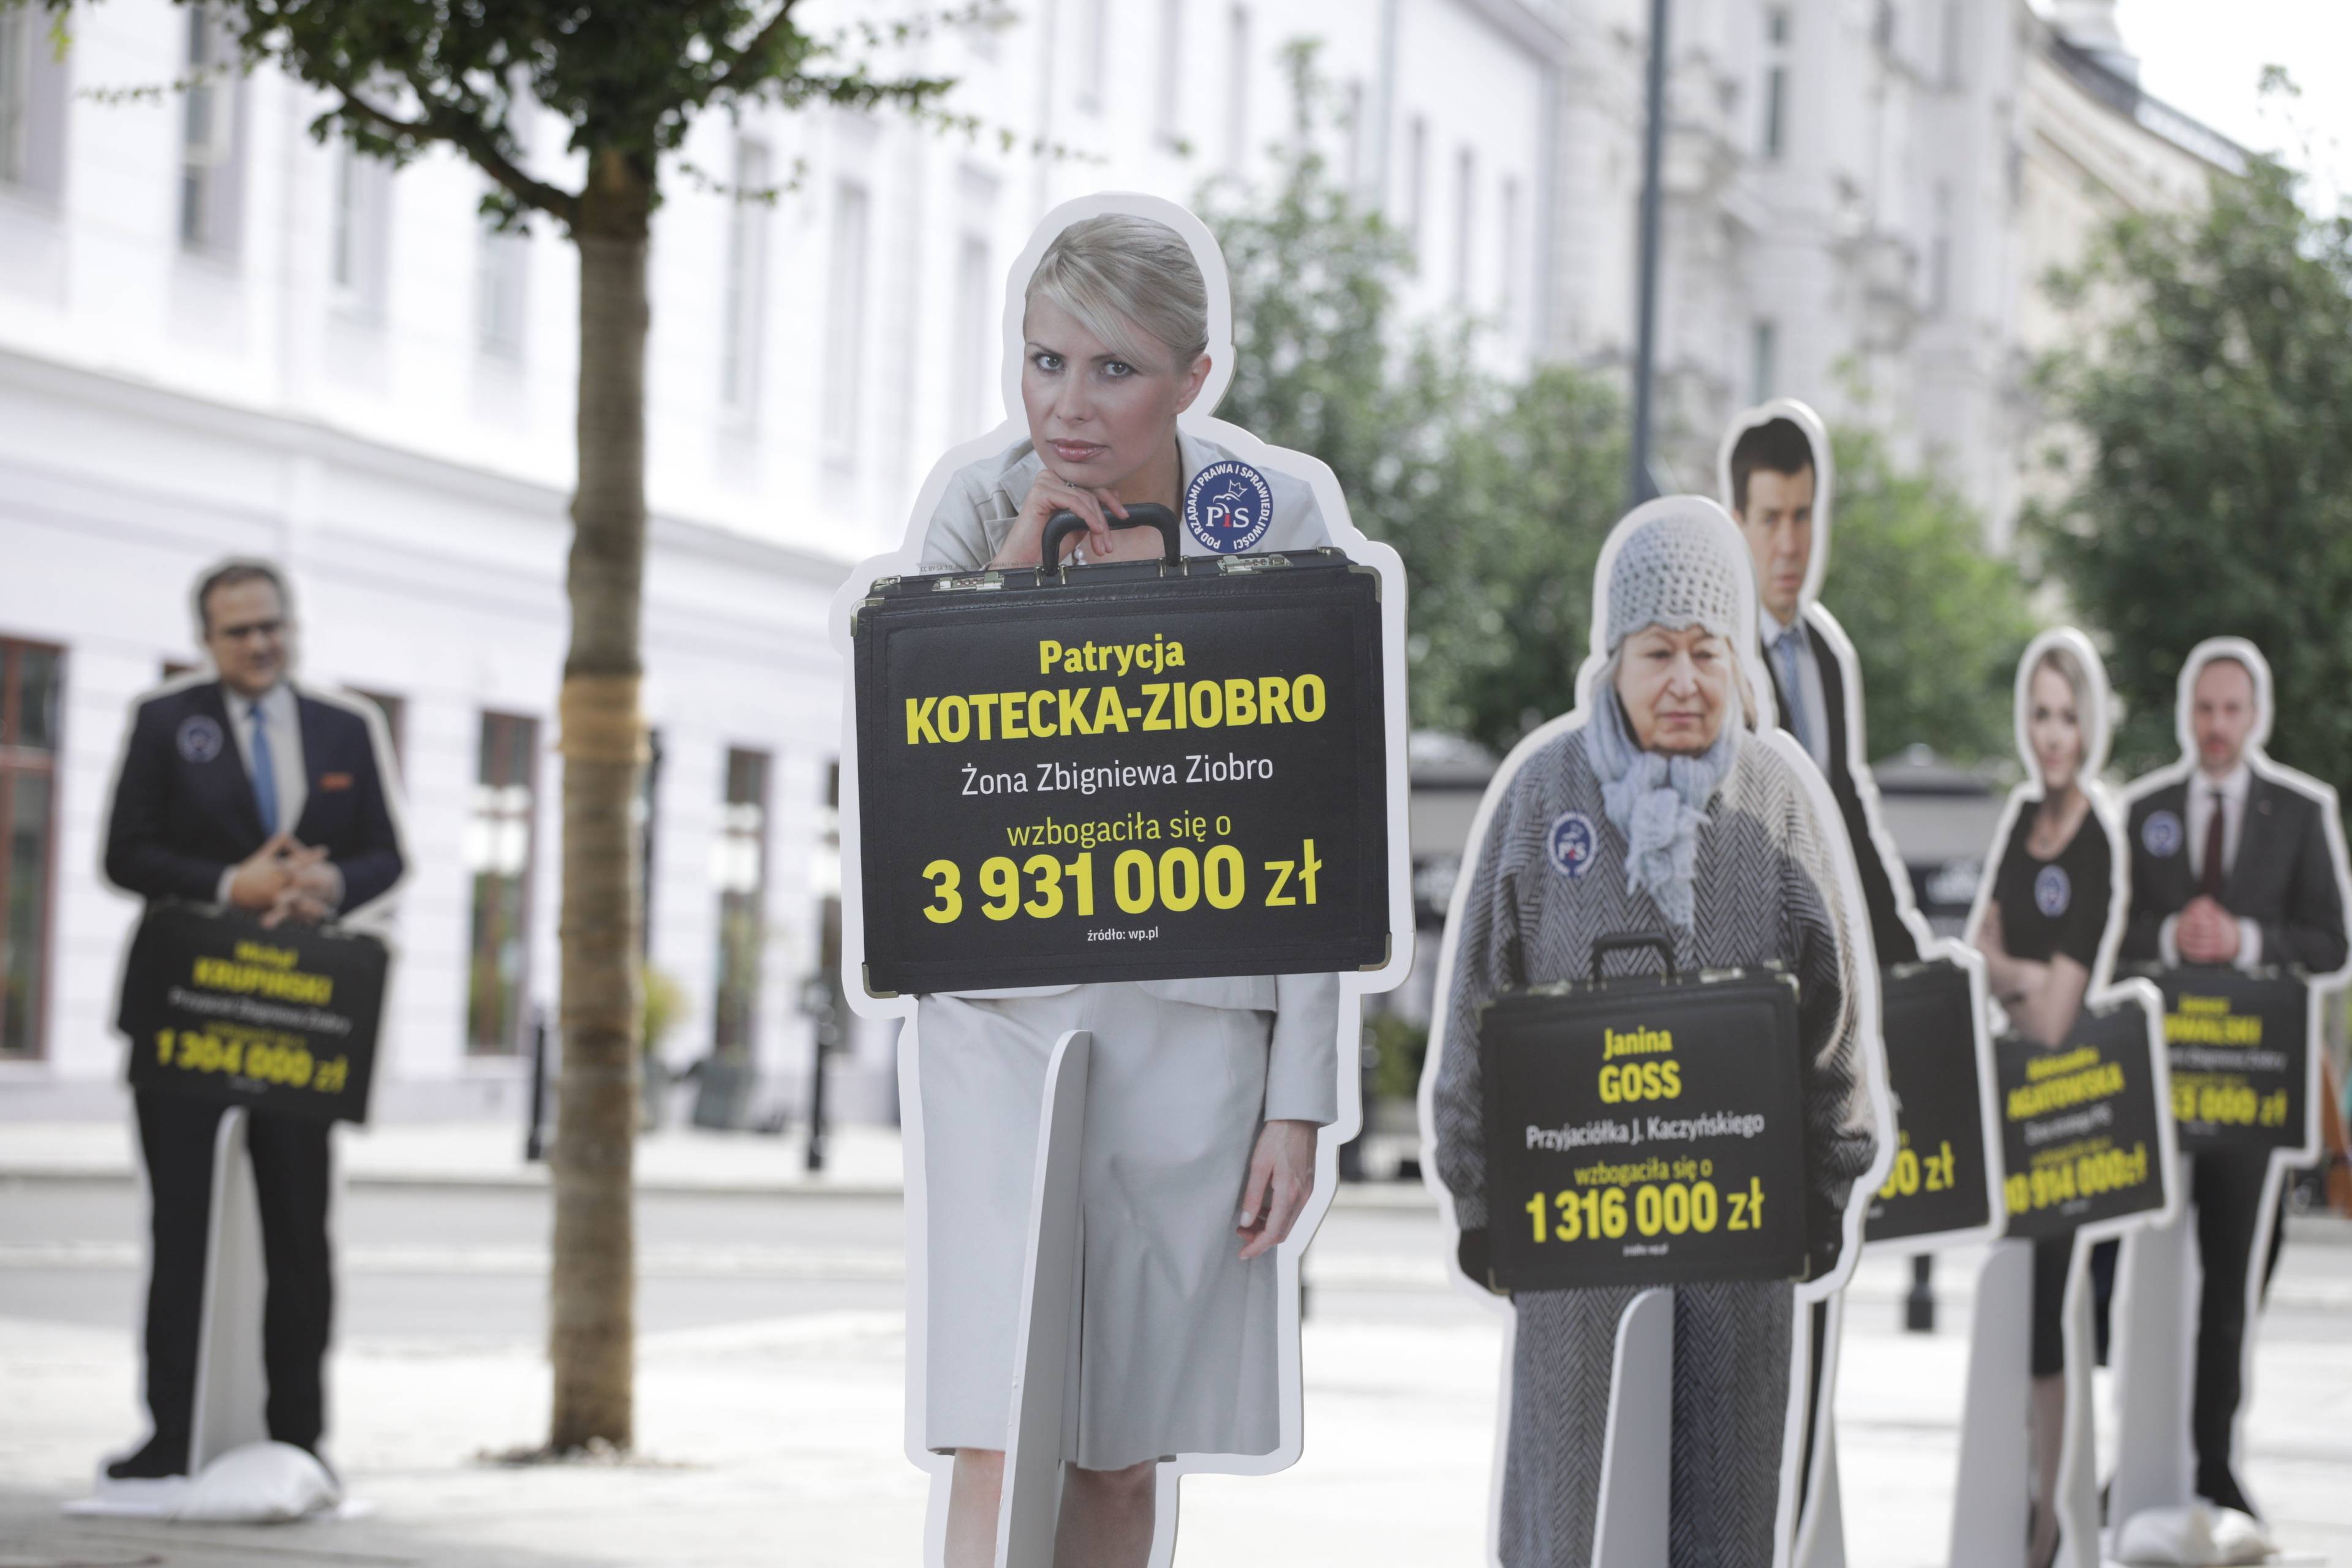 Manekin z podobizną Patrycji Koteckiej, stojący na ulicy z informacją o zarobkach żony b. ministra sprawiedliwości Zbigniewa Ziobry